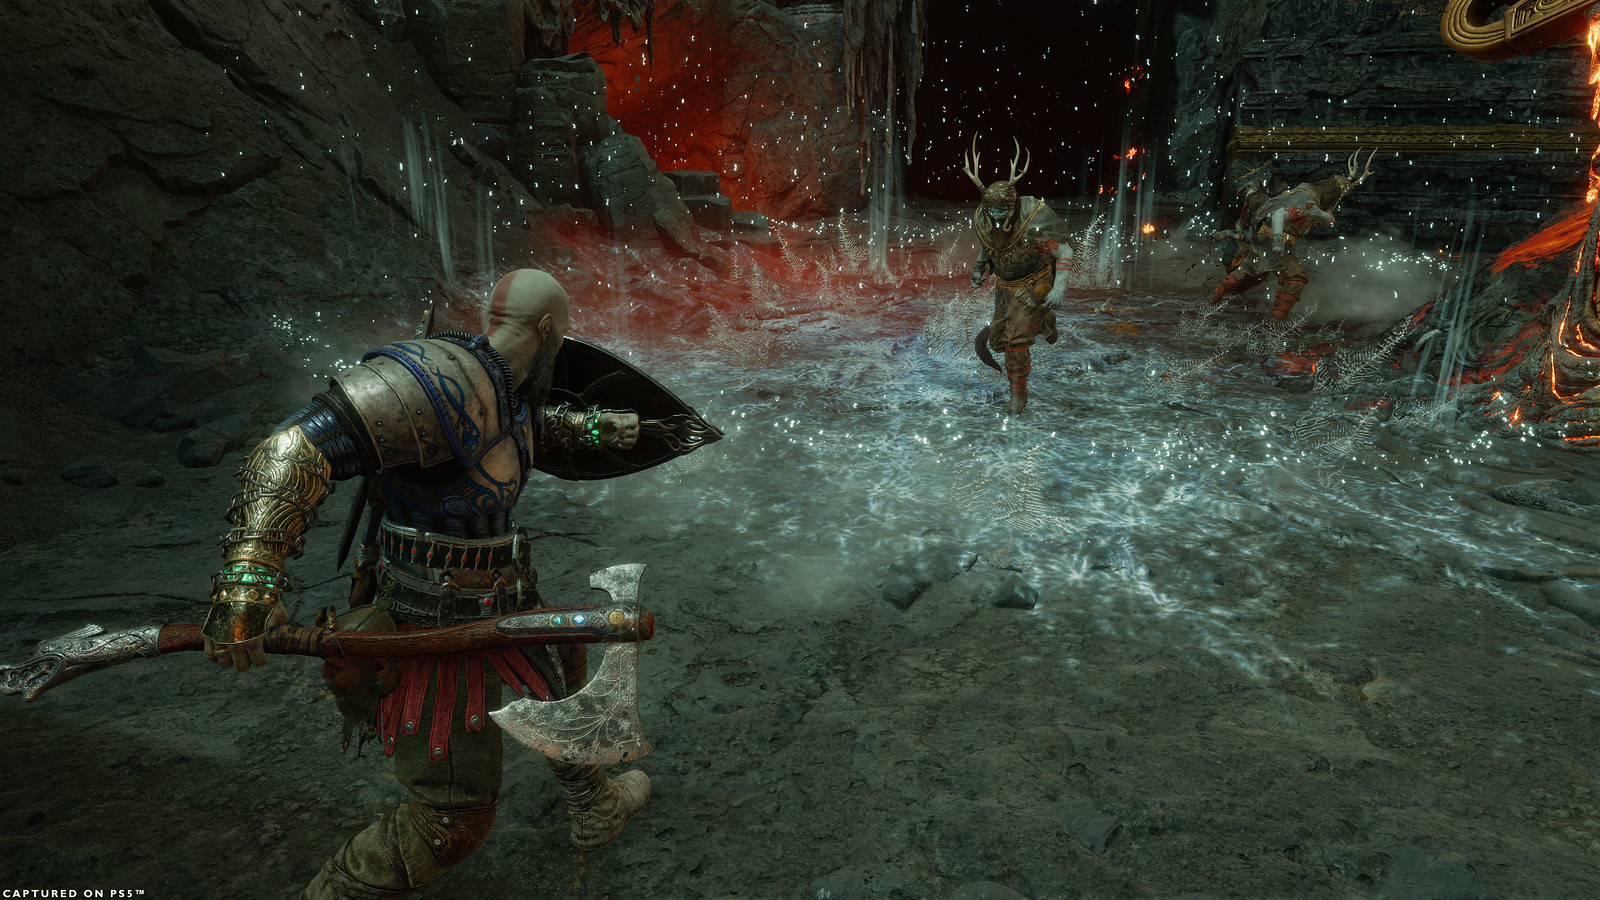 Kratos si scontra con Hel-Raiders nell'areana Muspelheim. Il terreno è coperto da gelo effetto dell'abilità dell'evocazione runica di Kratos. Kratos ha lo scudo alzato contro i nemici, mentre regge l'Ascia del Leviatano nella mano destra e si prepara all'approccio.